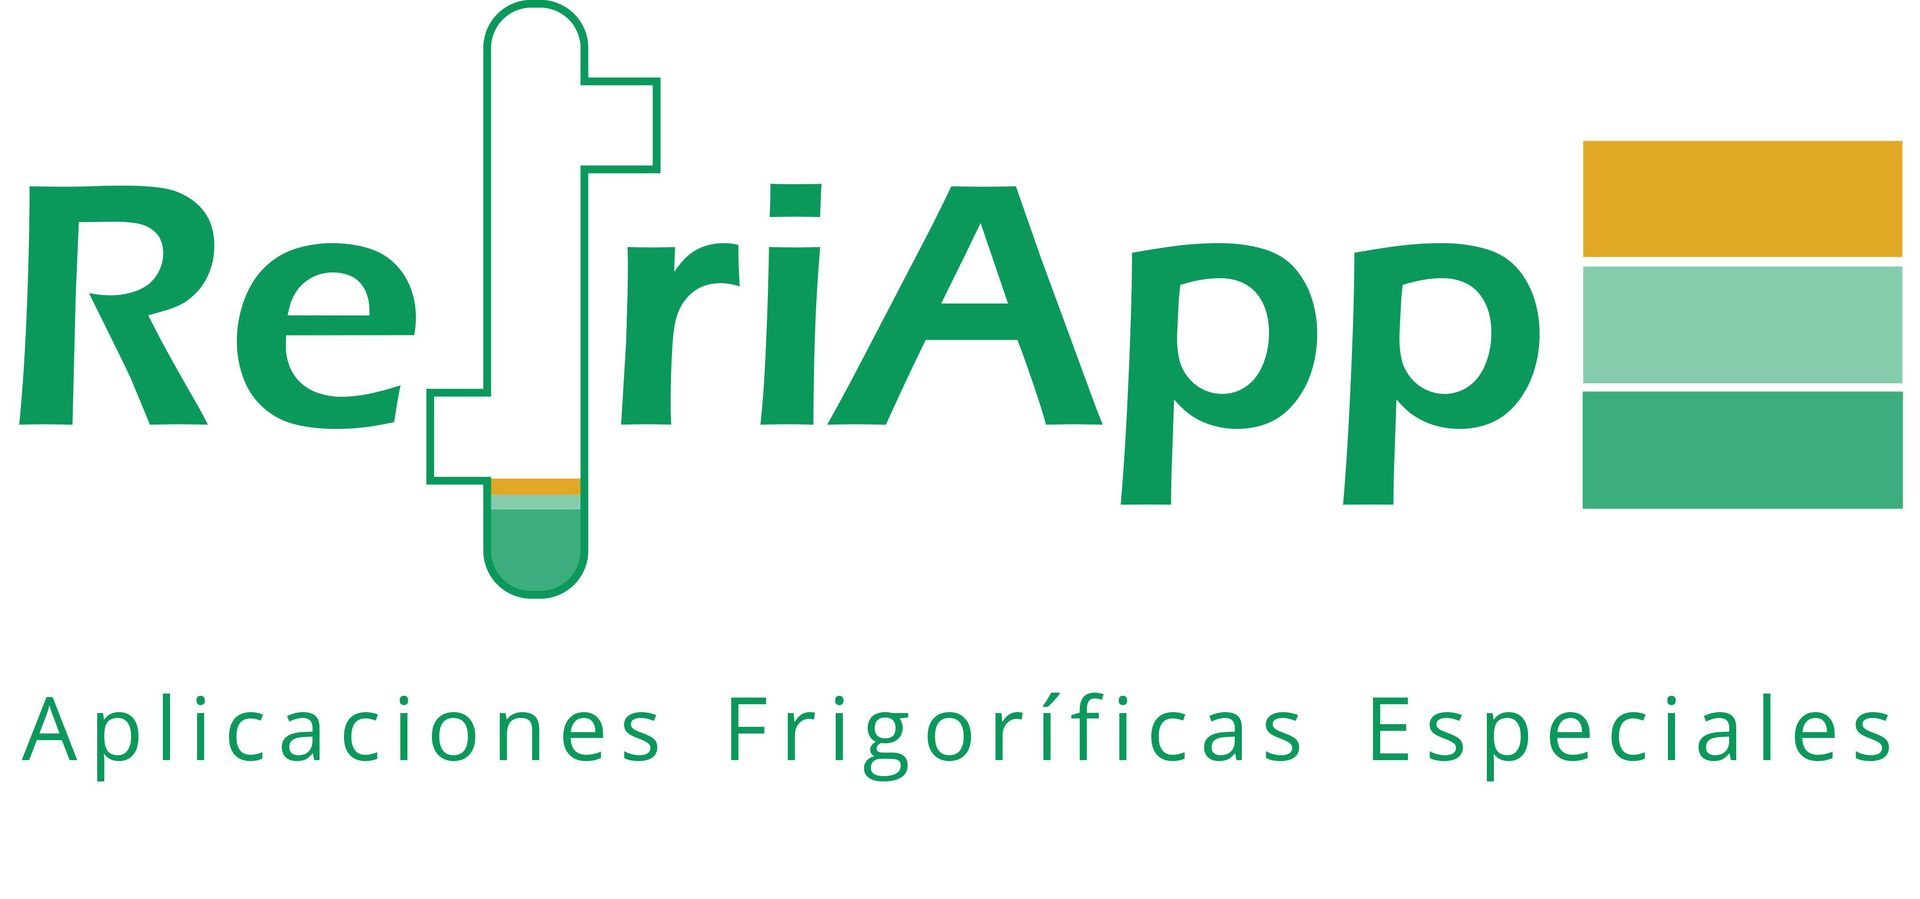 Logotipo Refriapp 2